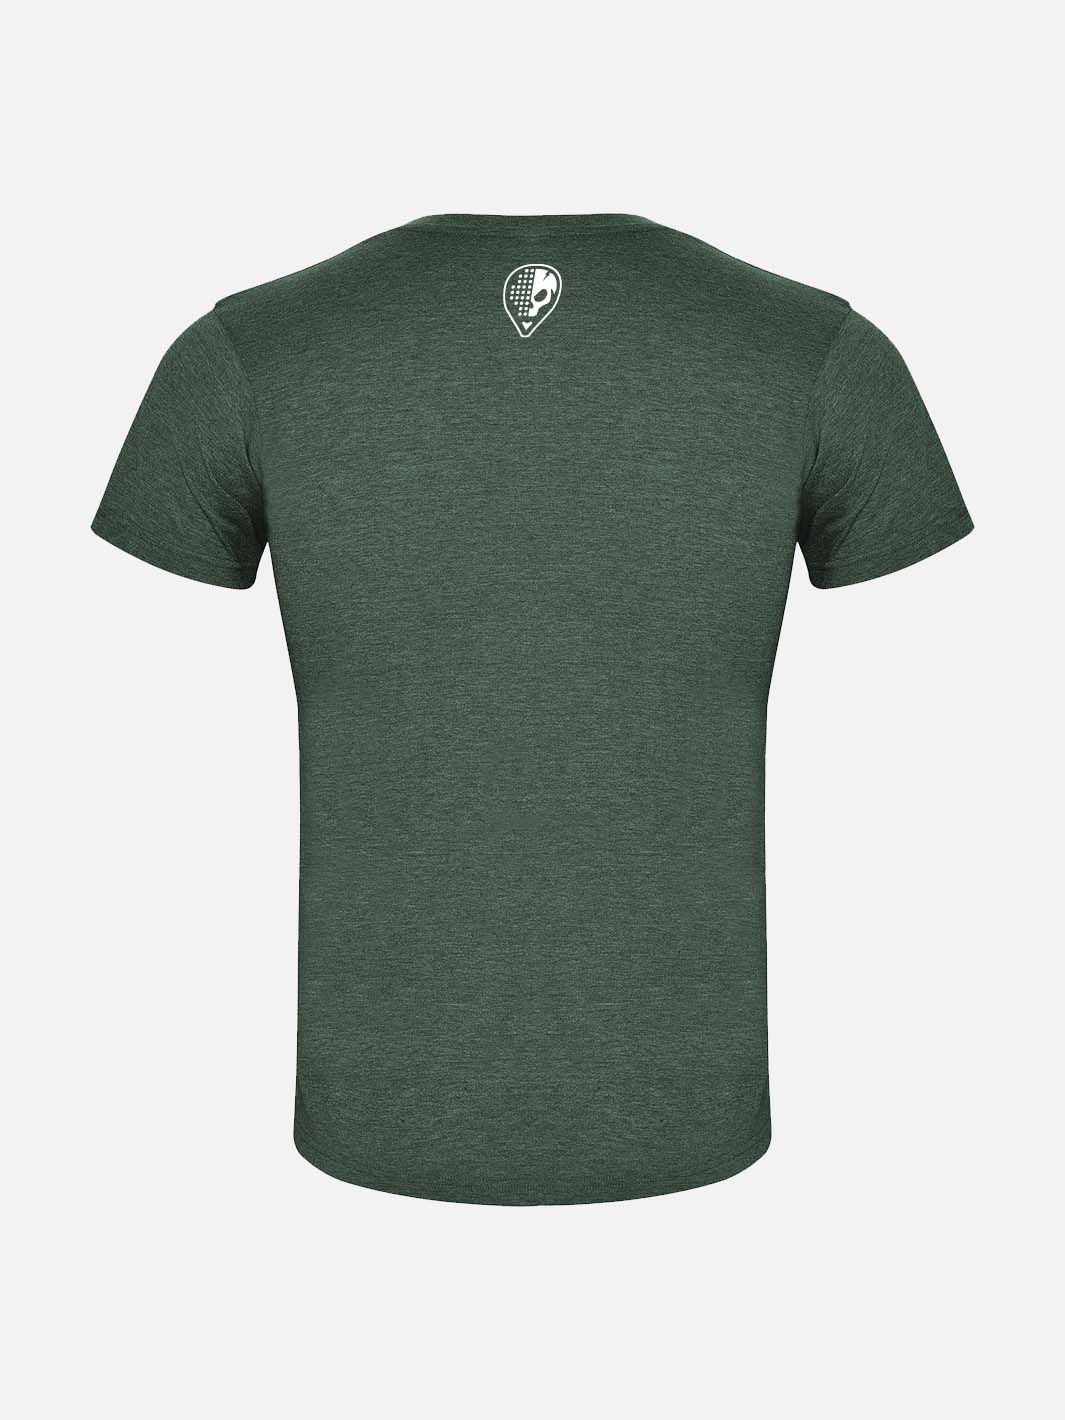 Juan T-Shirt - Bottle Green